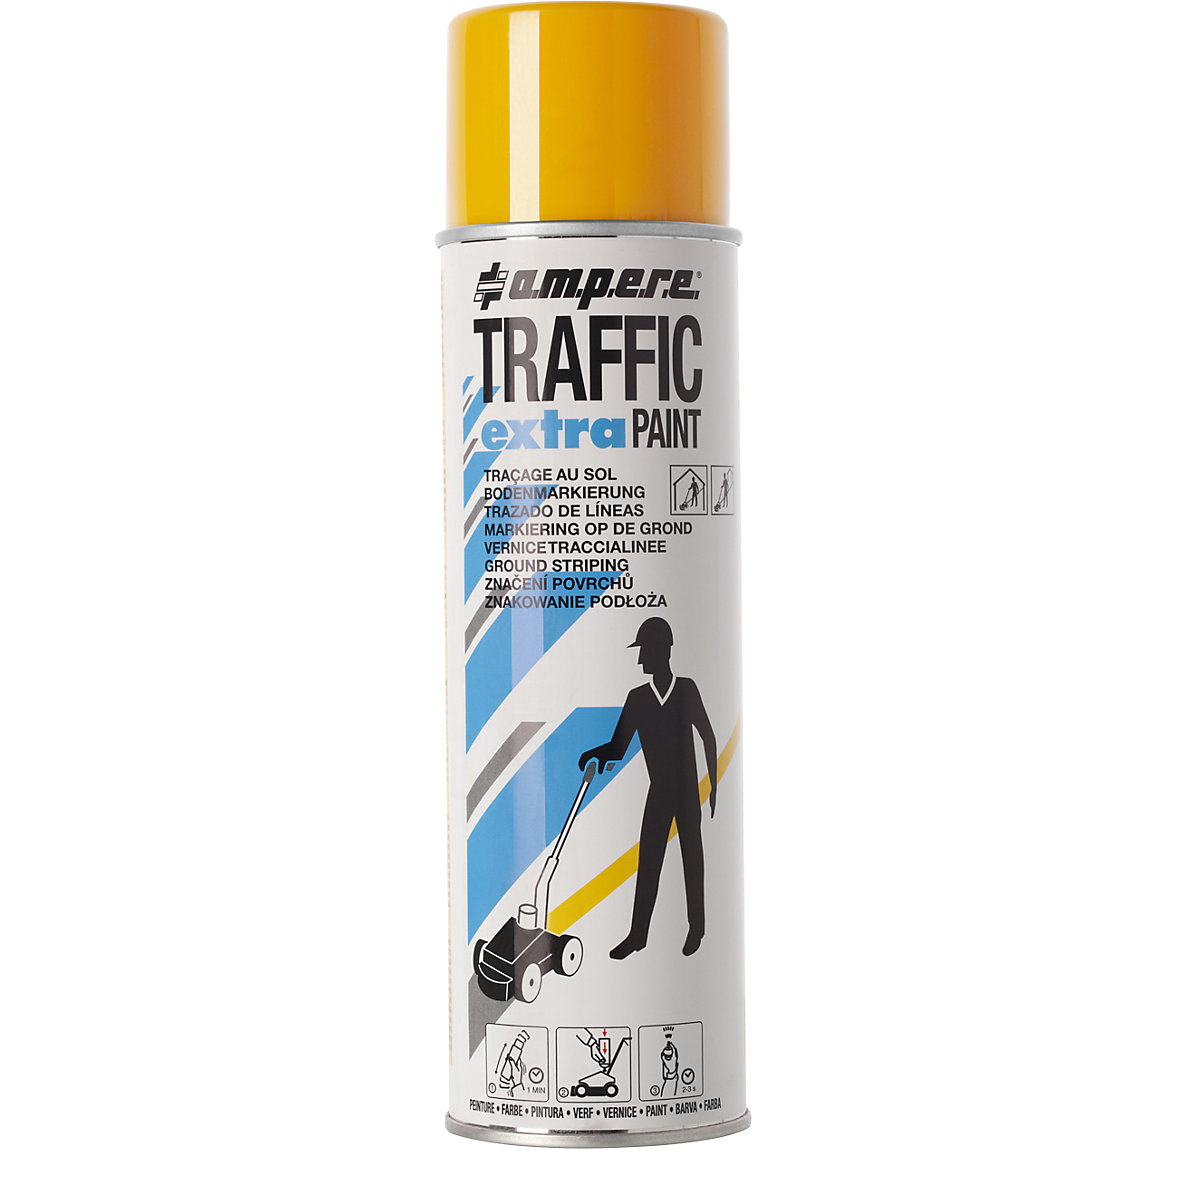 Pintura de marcaje Traffic extra Paint® para solicitaciones altas – Ampere